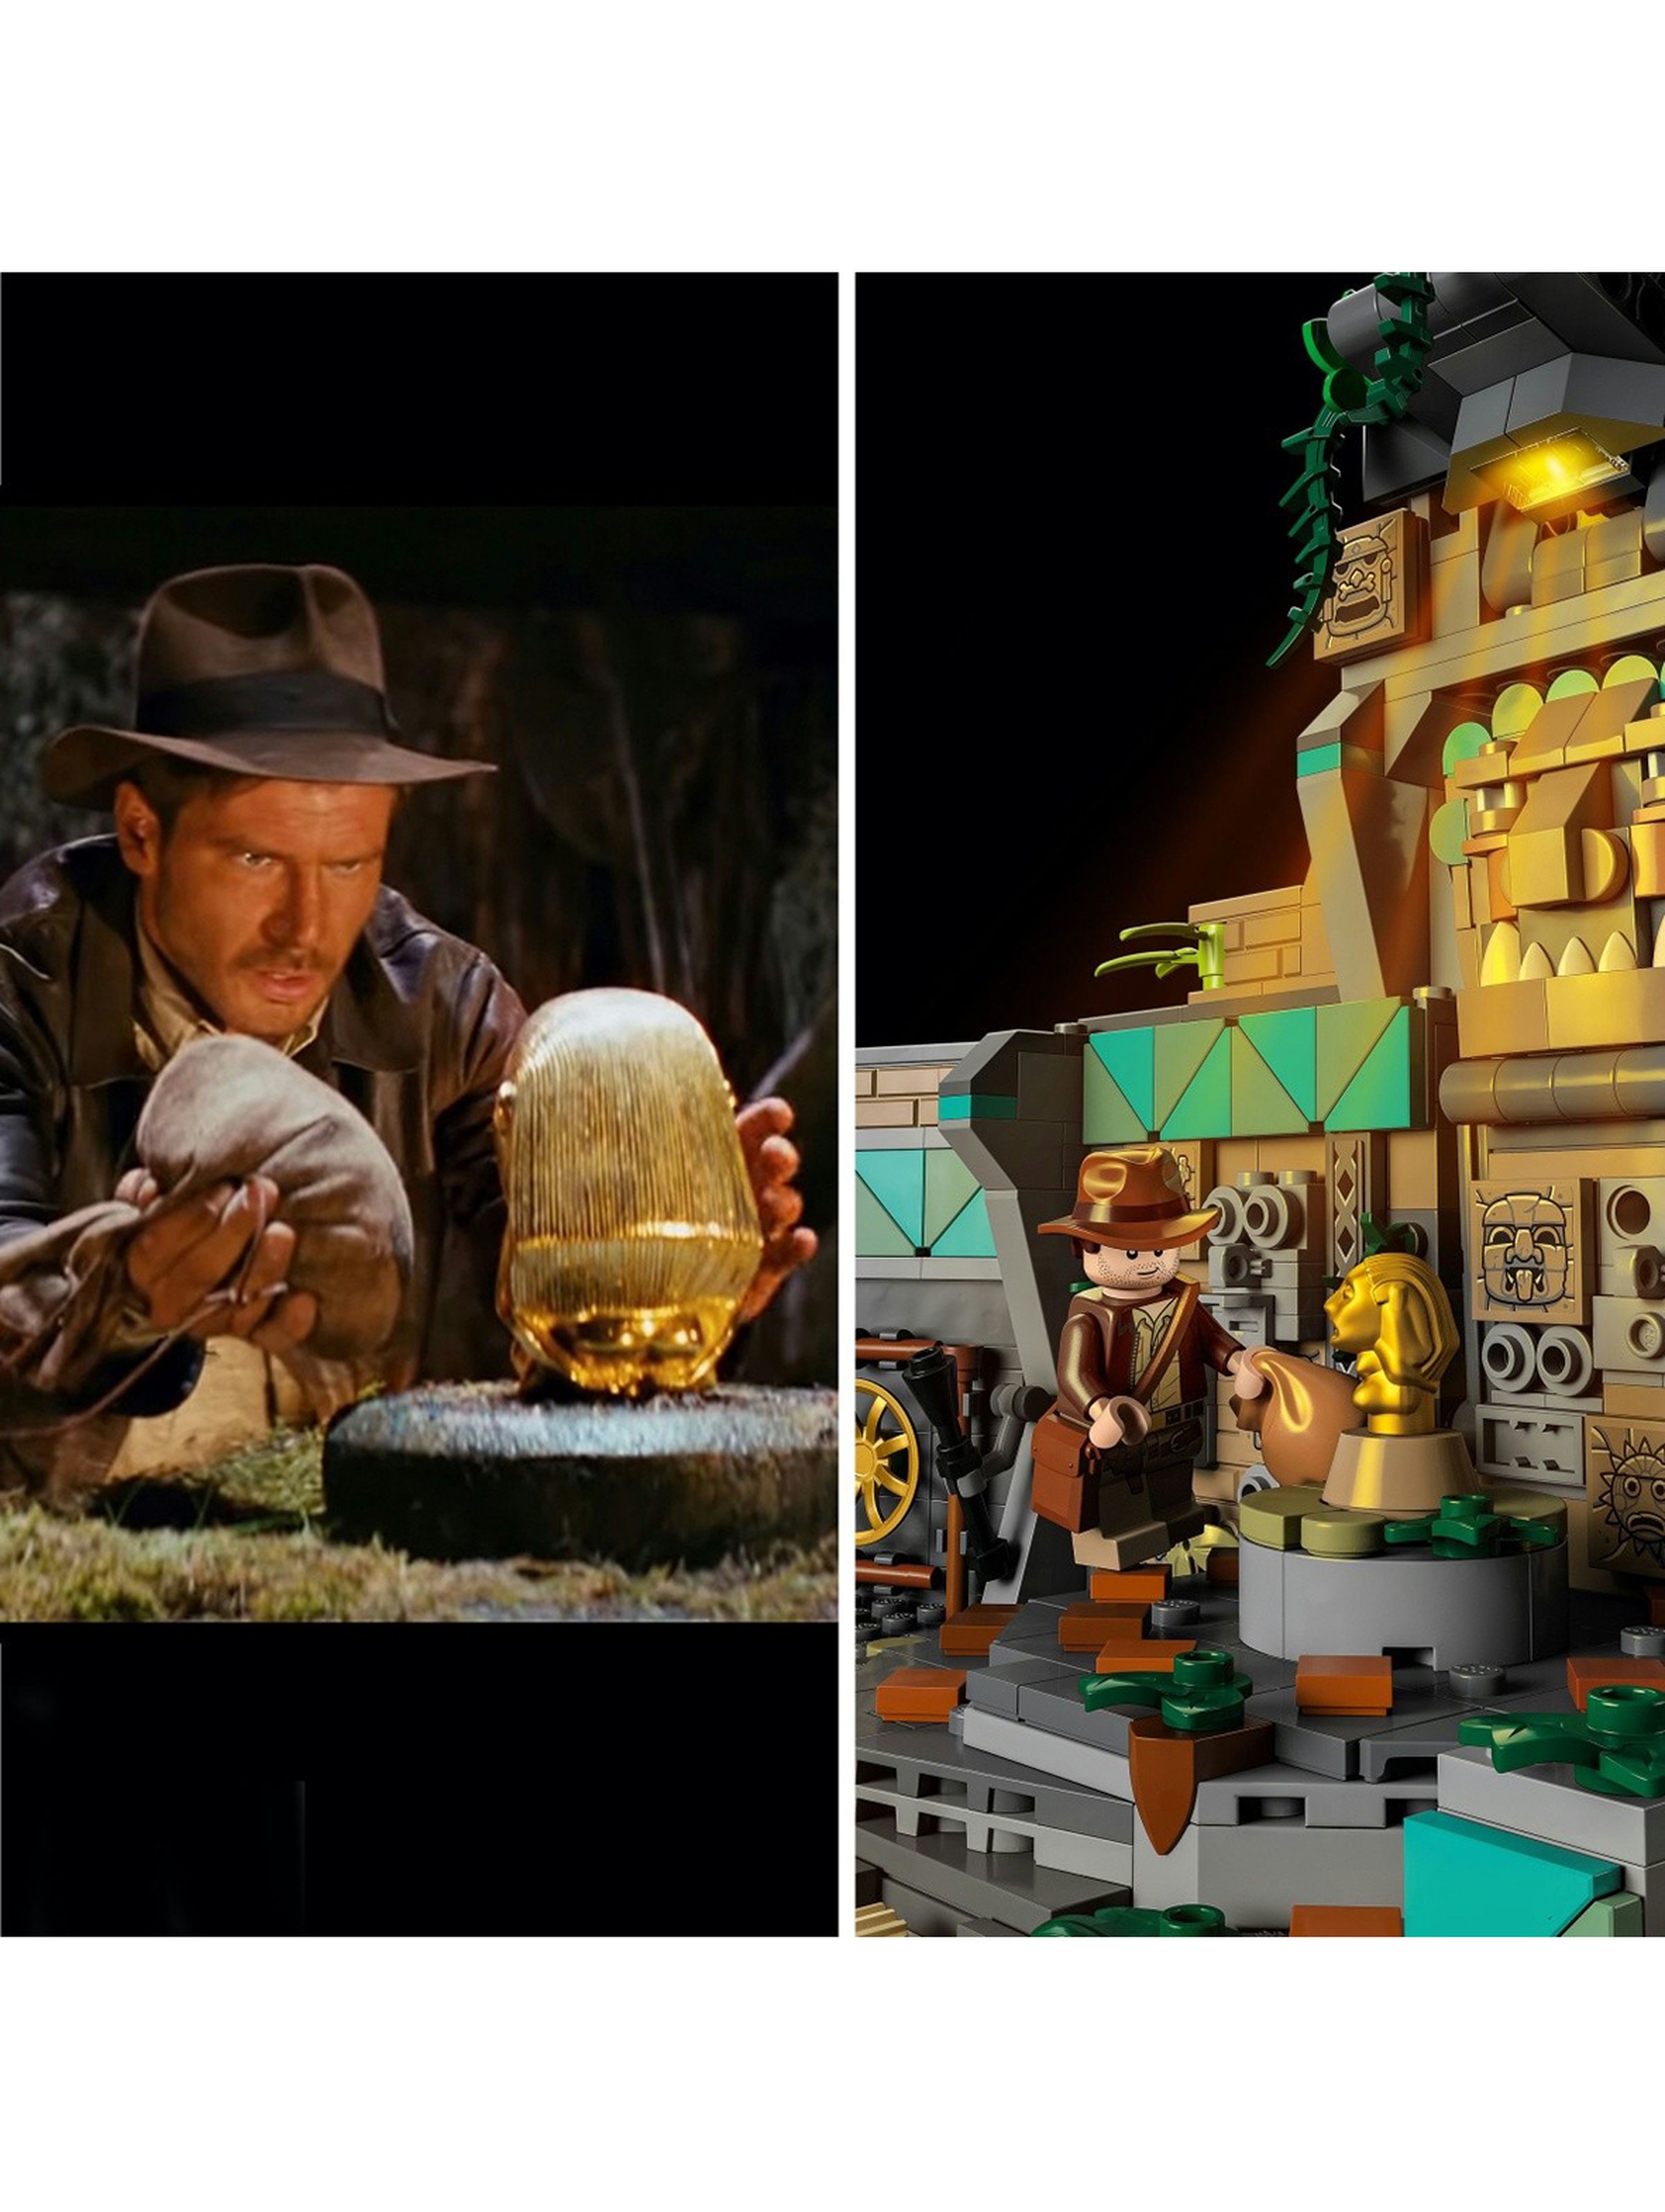 Klocki LEGO Indiana Jones 77015 Świątynia złotego posążka - 1545 elementów,wiek 18 +